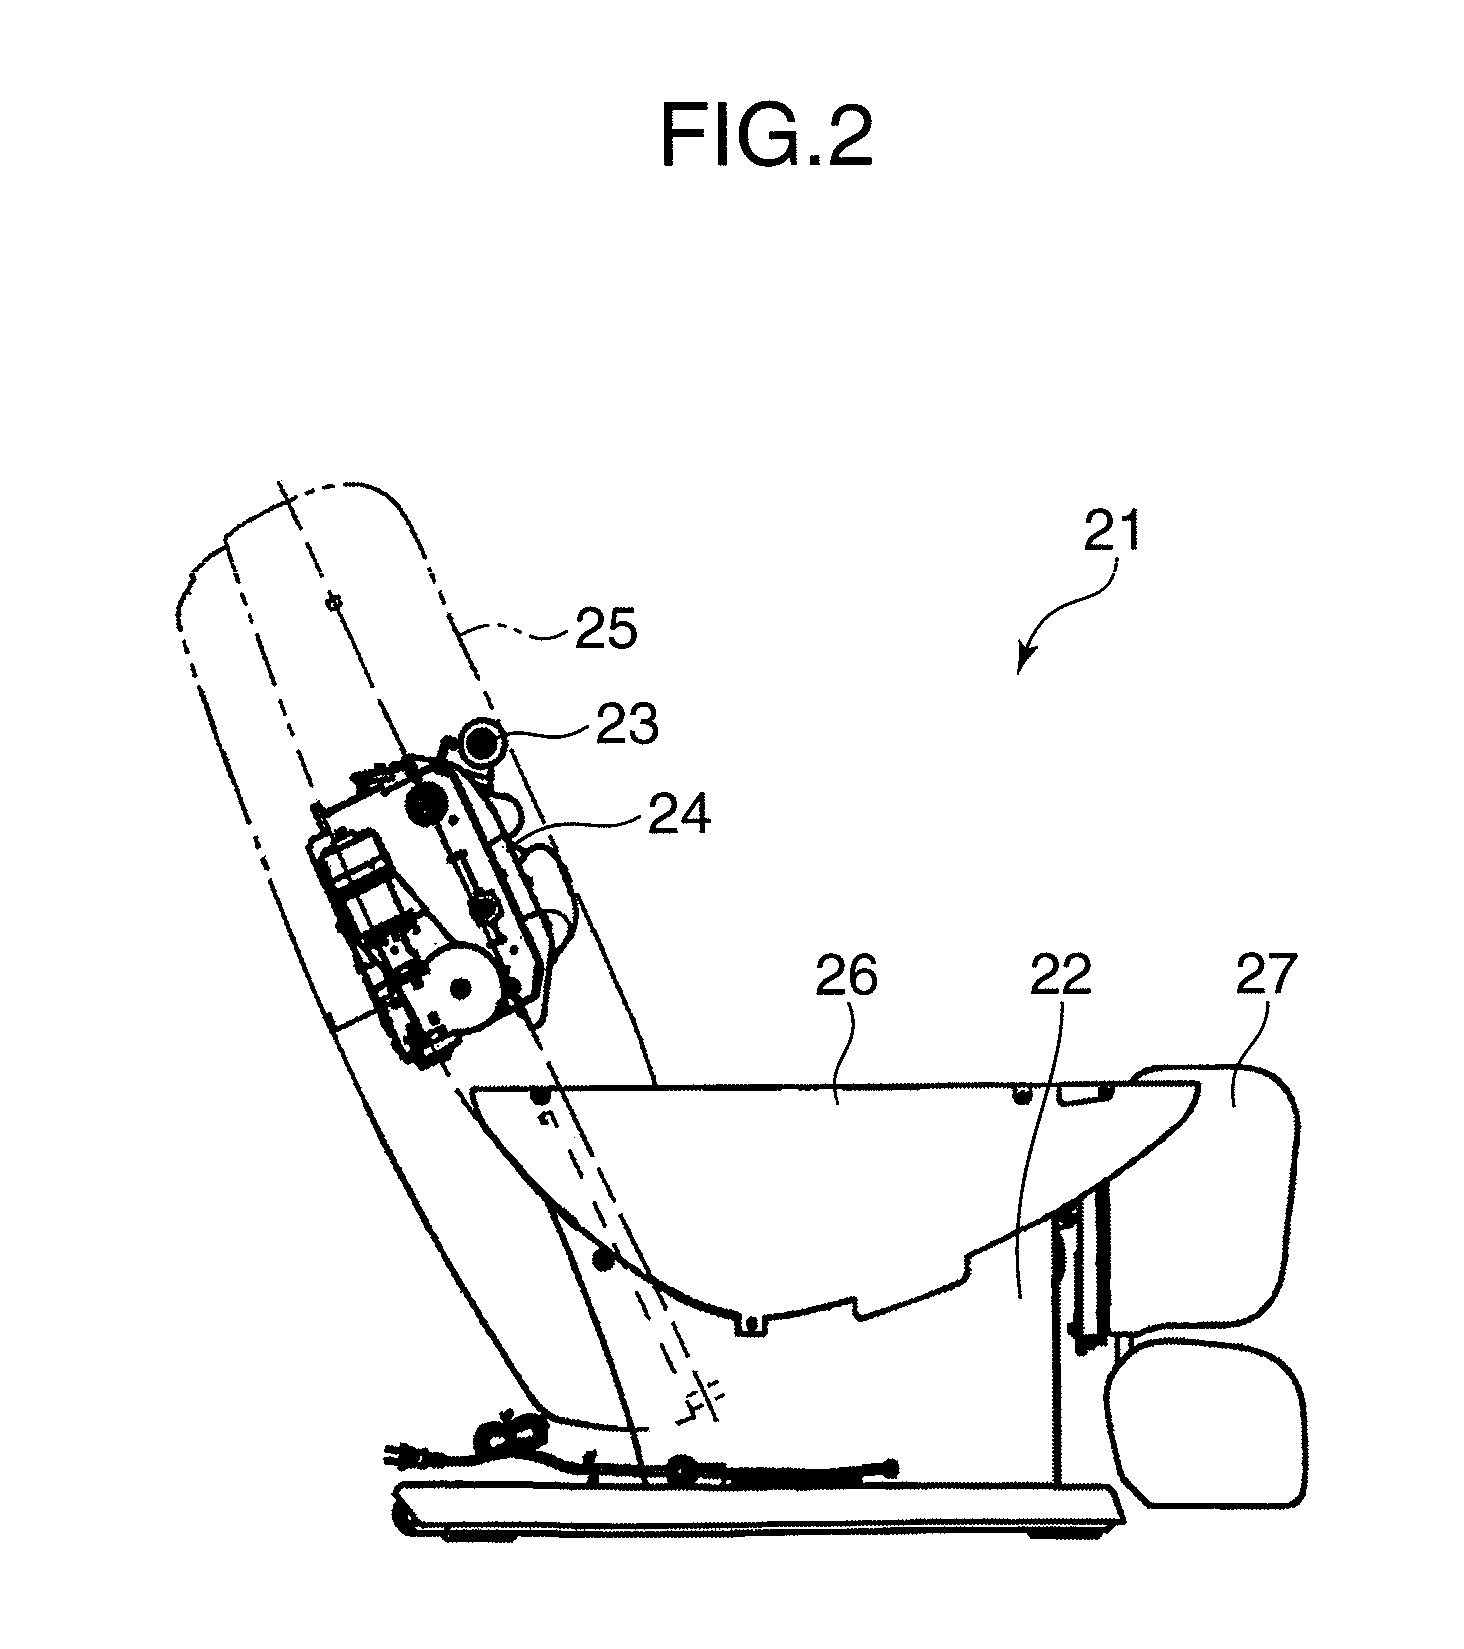 Chair-type massage machine